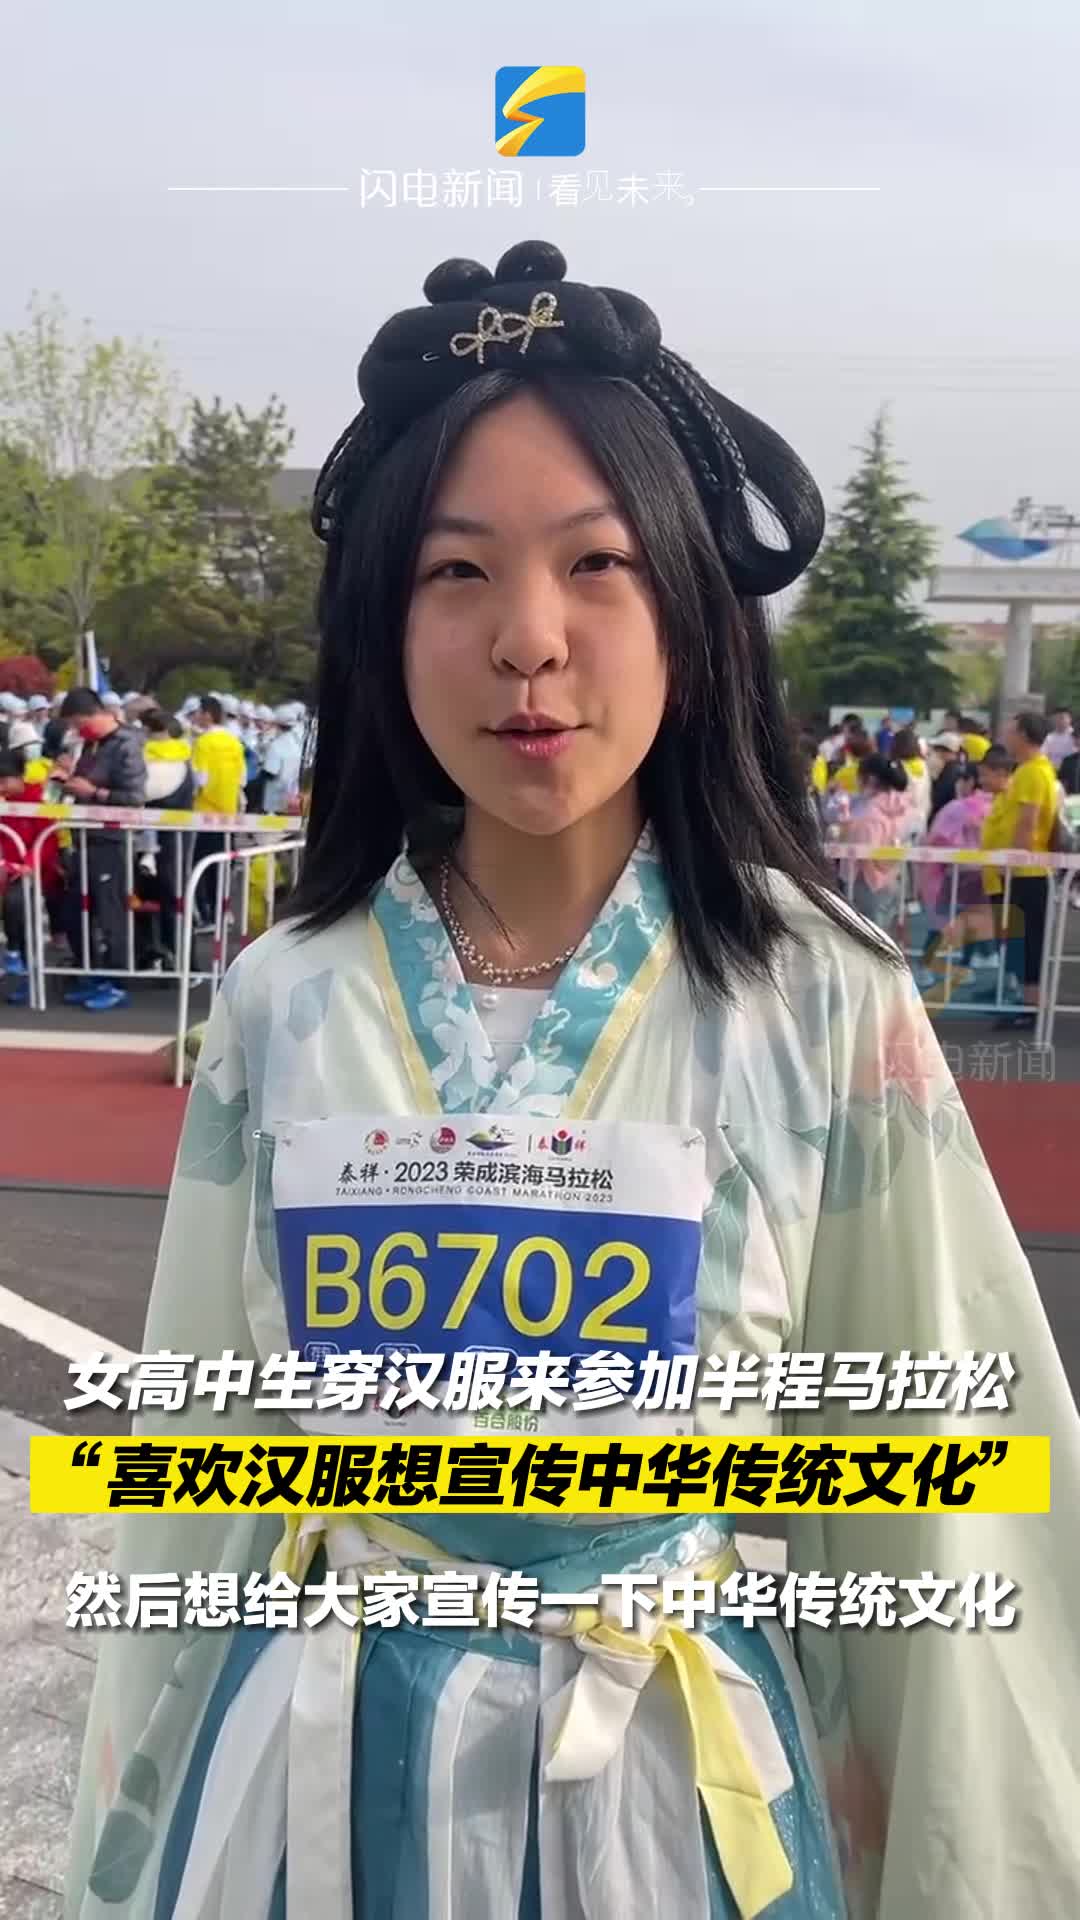 女高中生穿汉服来参加半程马拉松 “喜欢汉服想宣传中华传统文化”